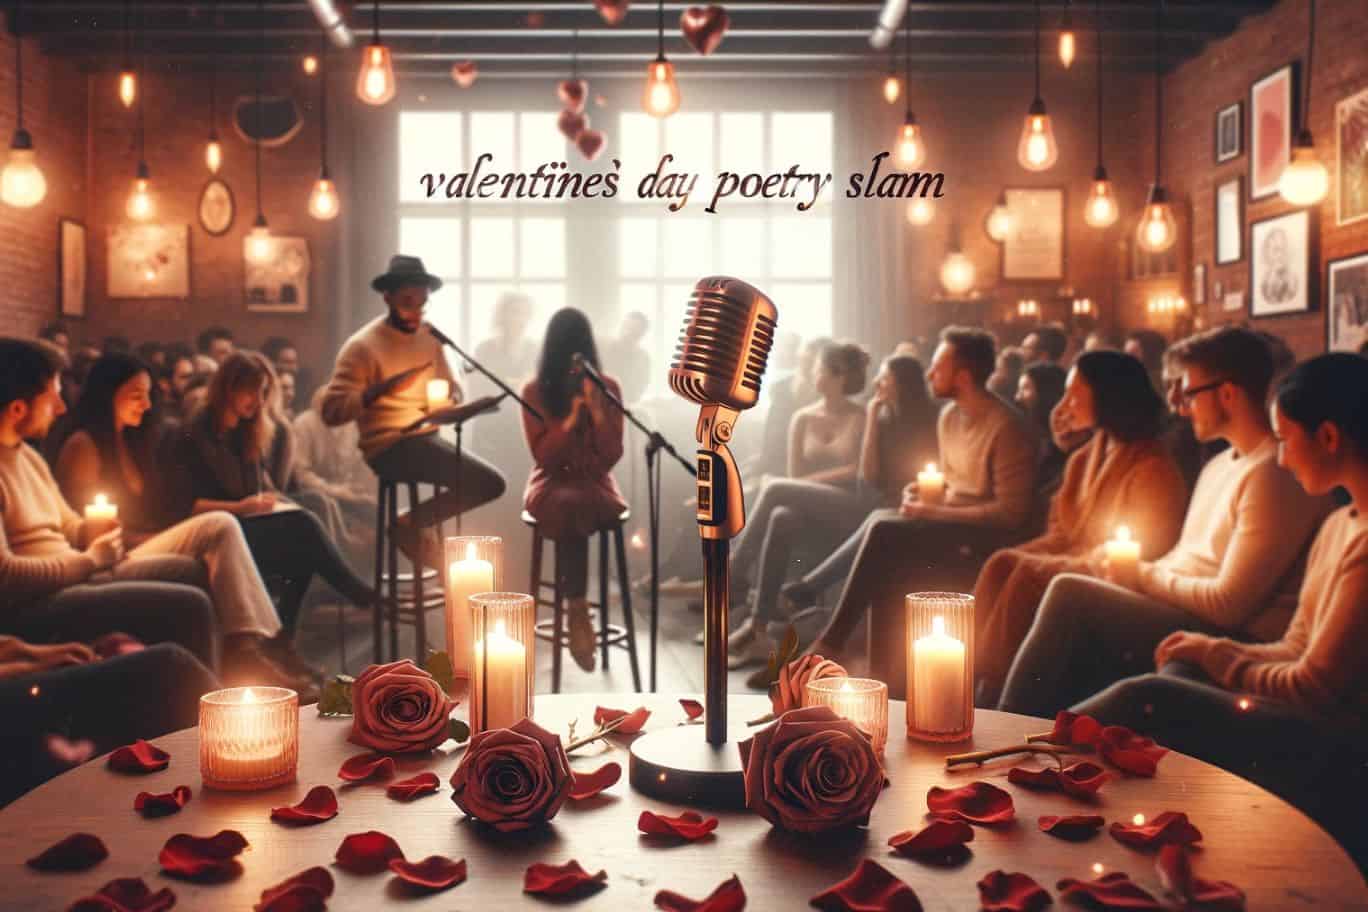 Event-Cover zum Poetry Slam am Valentinstag, Veranstaltung mit romantisch geschmücktem Raum und aufmerksamen Gästen, während auf der Bühne gelesen wird